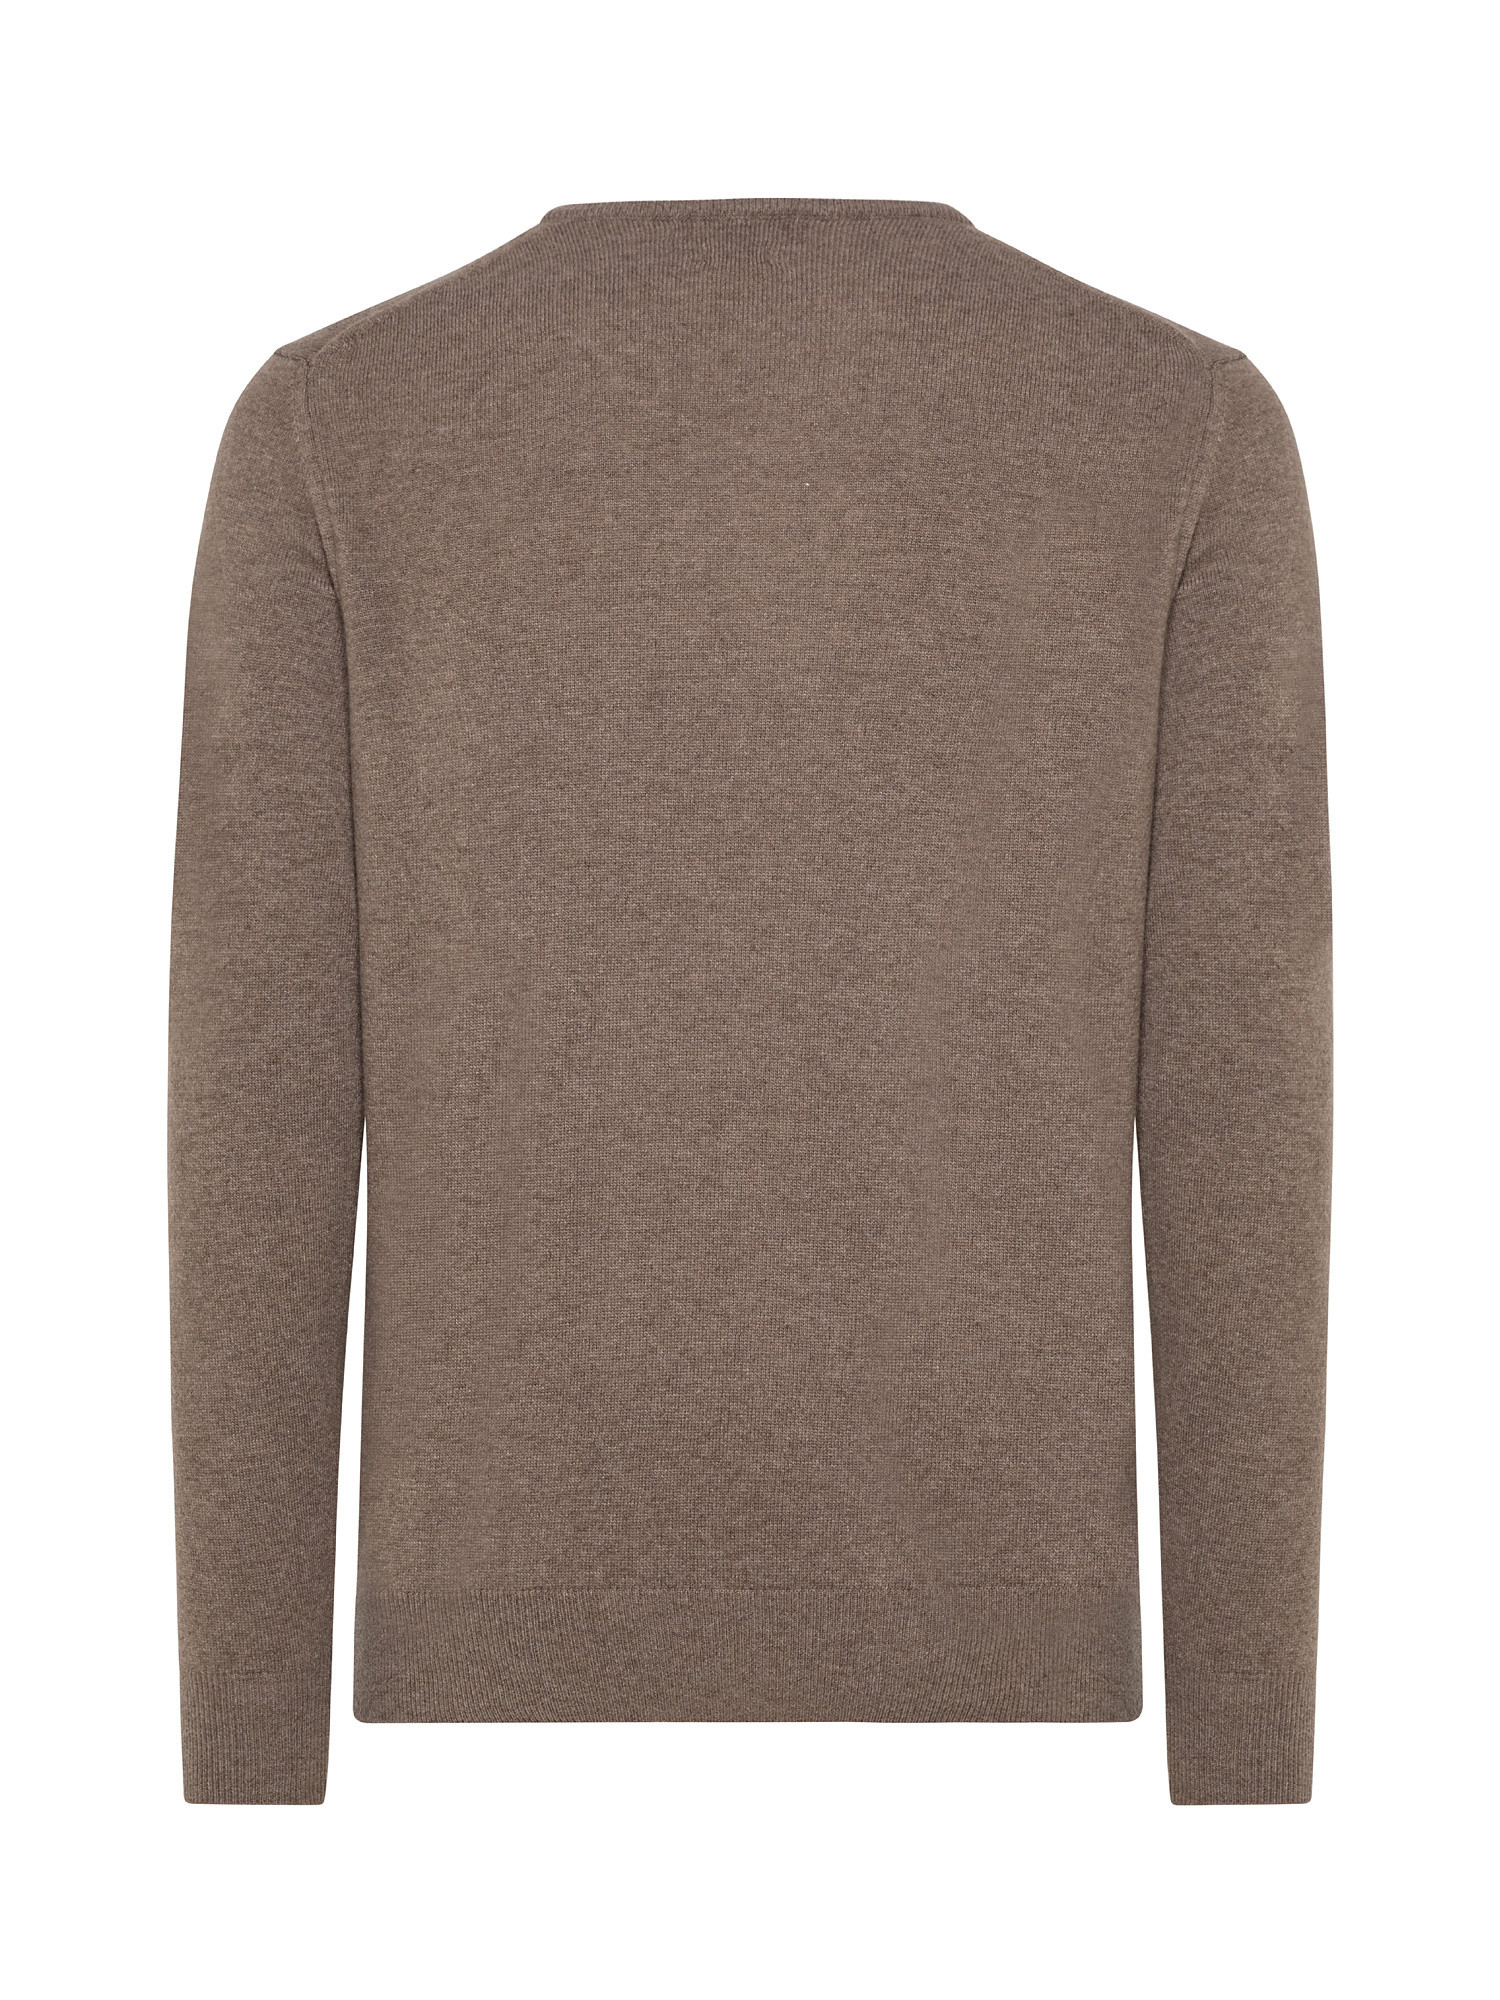 Basic cashmere blend pullover, Beige, large image number 1